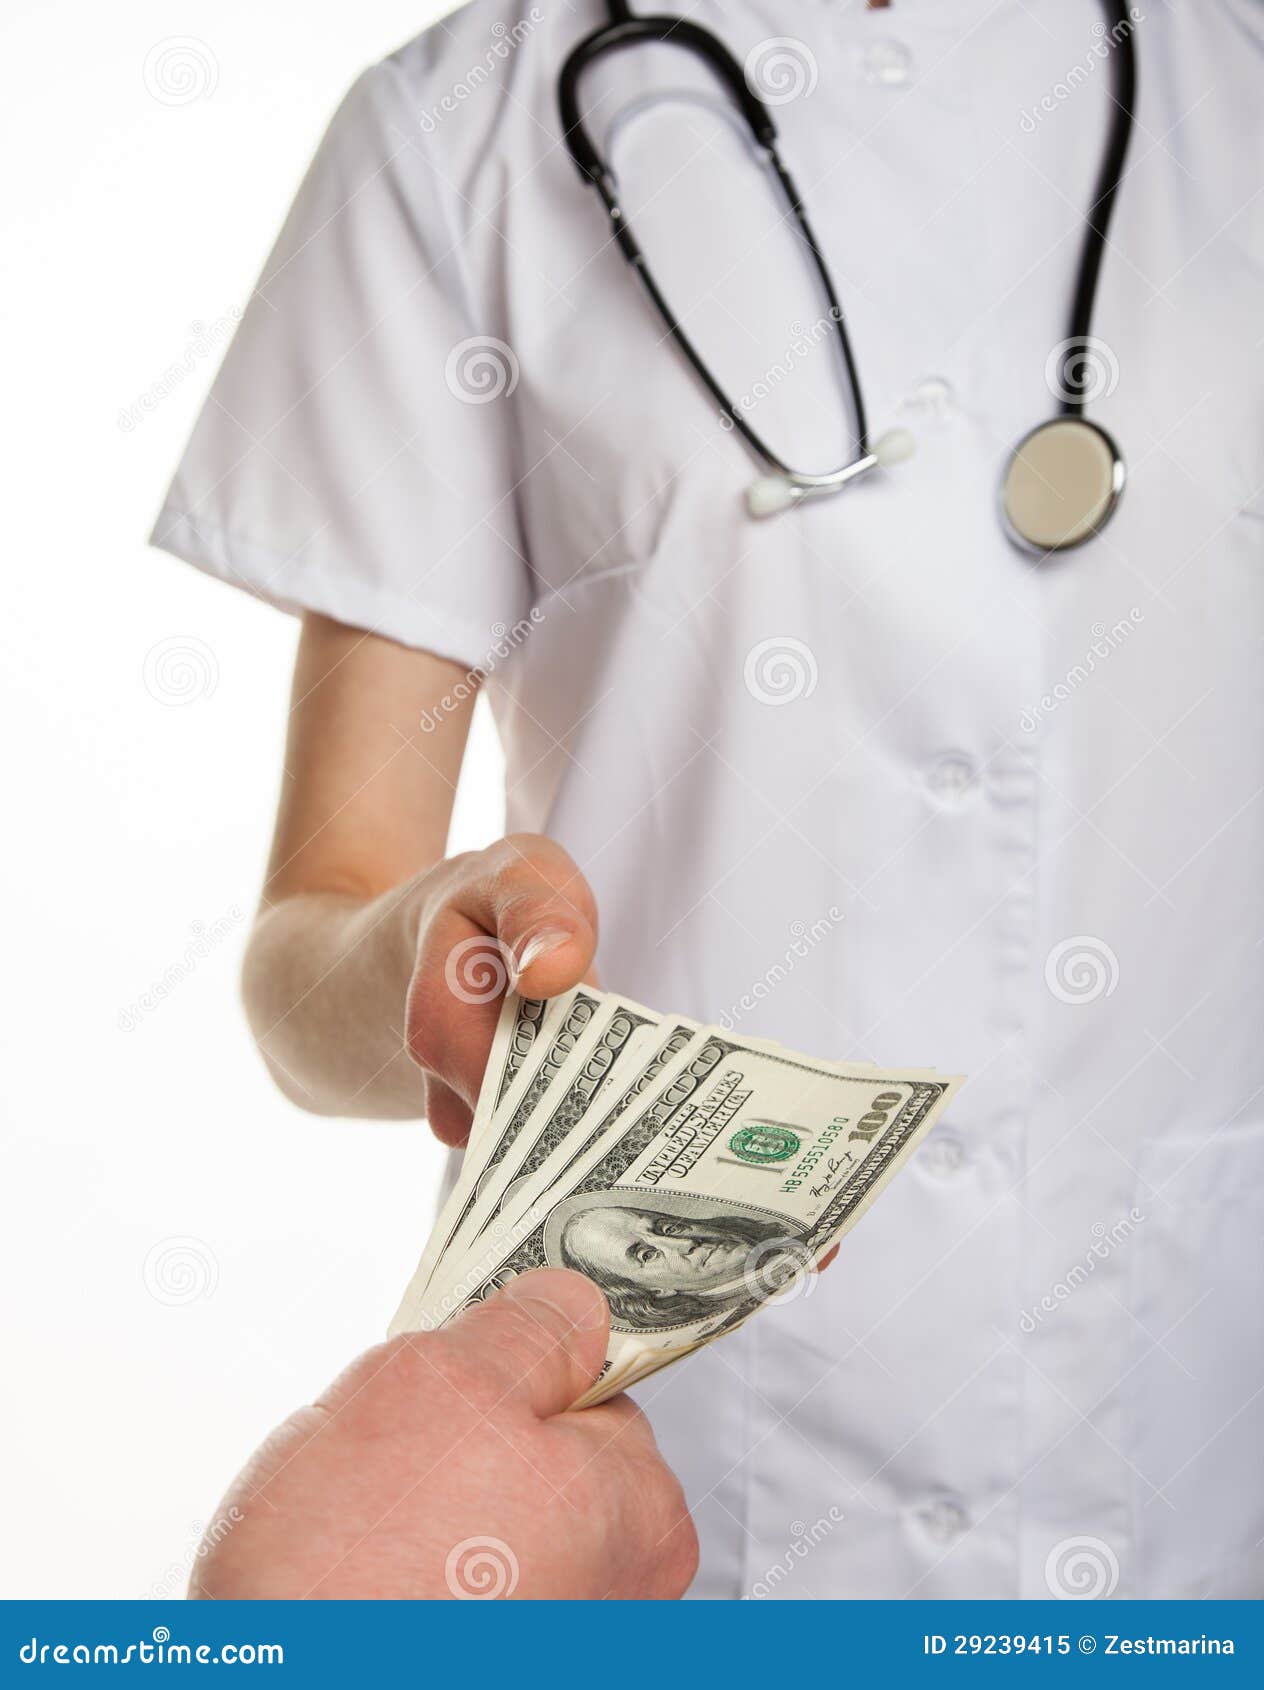 Сколько денег даете врачу. Врач с деньгами. Деньги пациент. Медицинские работники и деньги. Коррупция в медицине.